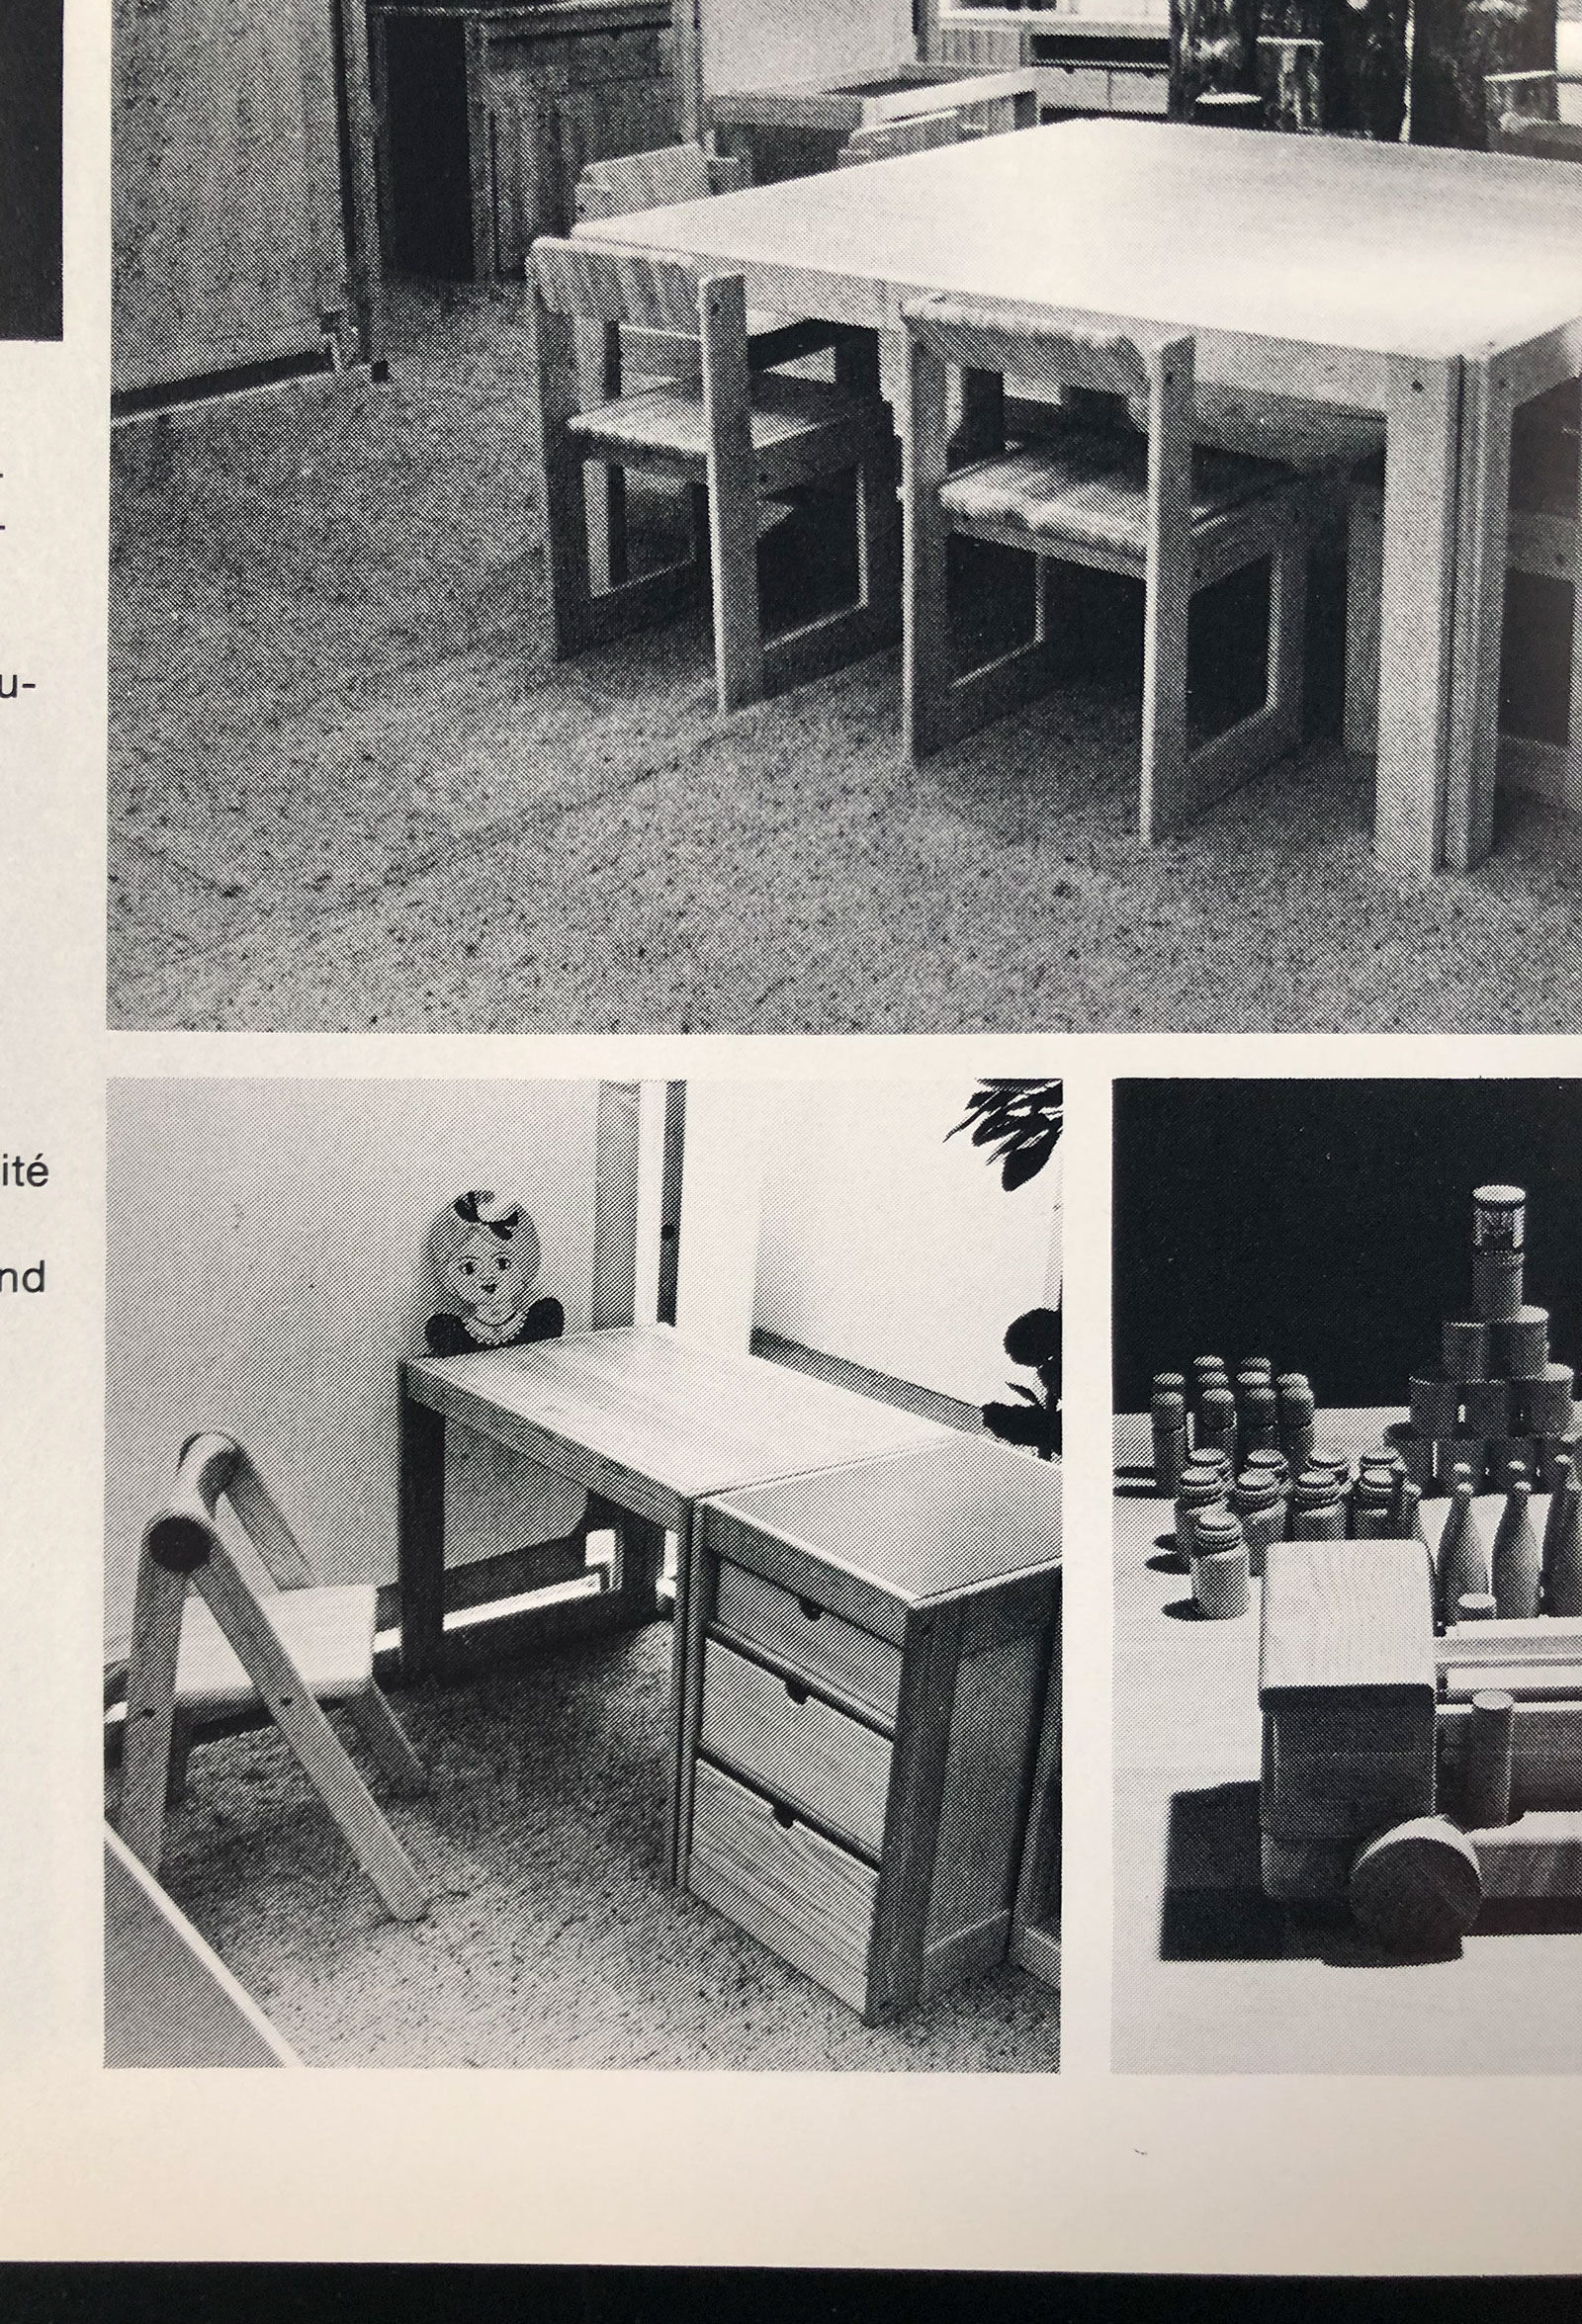 Childrens desk furniture by Pierre Grosjean setimage 21